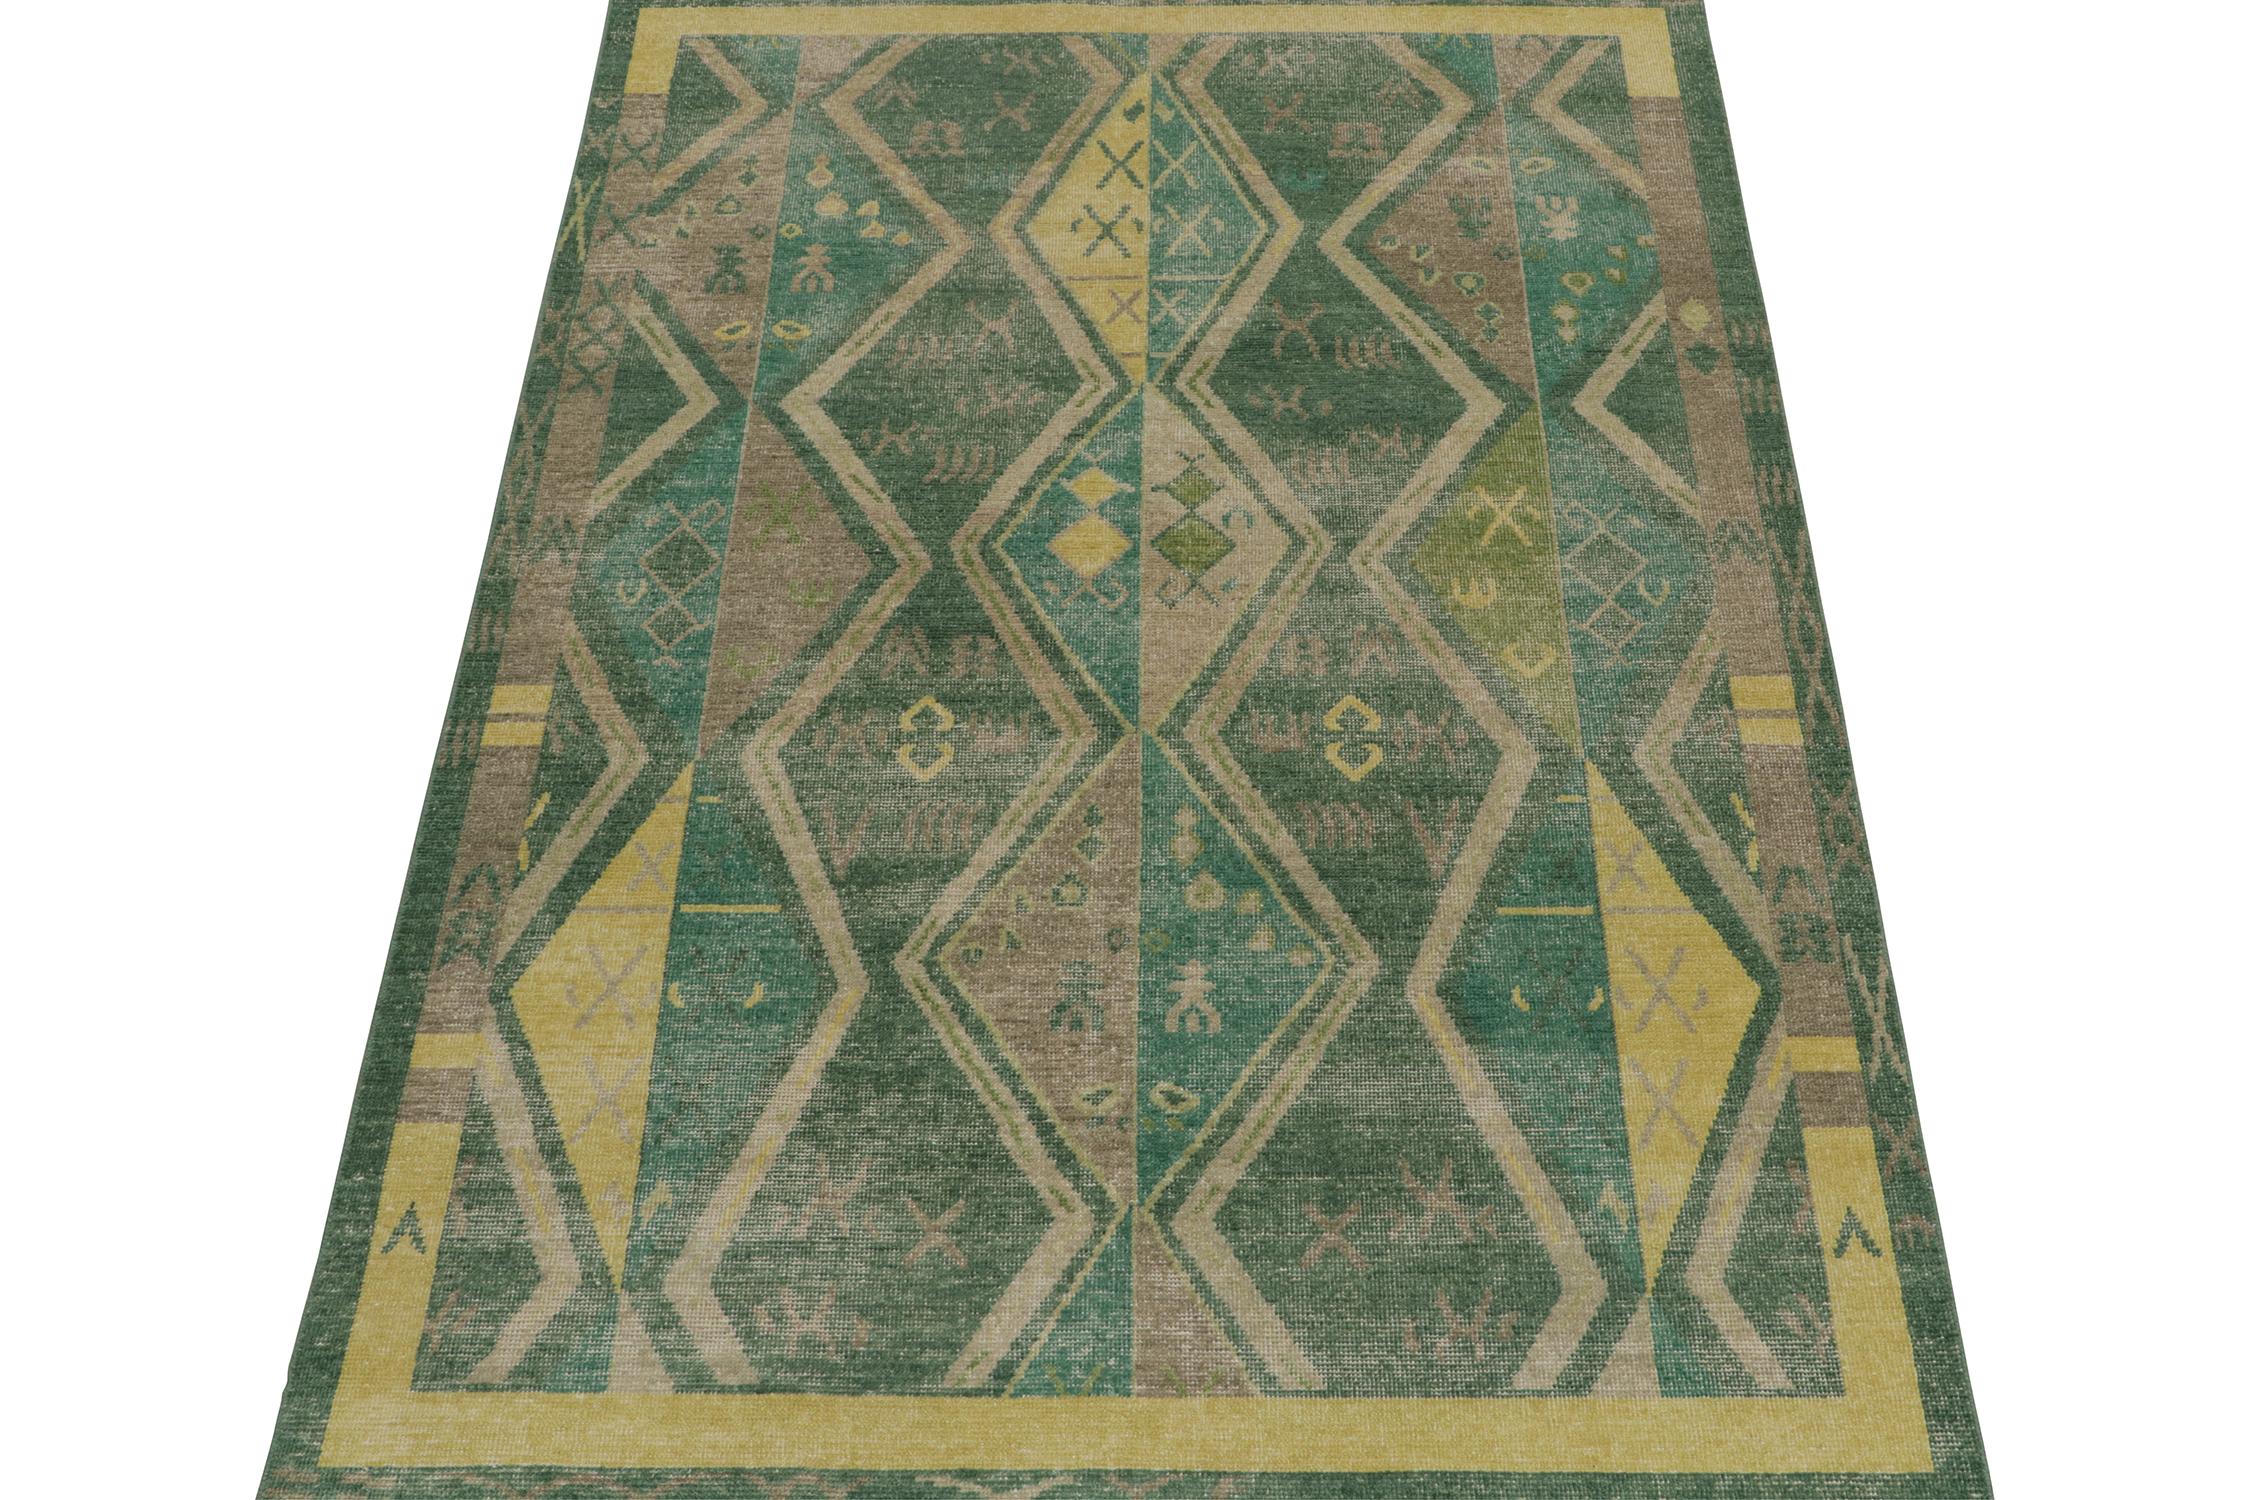 Ce tapis 6x9 est un nouvel ajout audacieux à la collection Homage de Rug & Kilim. Noué à la main en laine, son design célèbre les tapis tribaux Yuruk anciens dans des couleurs fraîches et modernes et une approche texturale unique. 

Plus loin dans